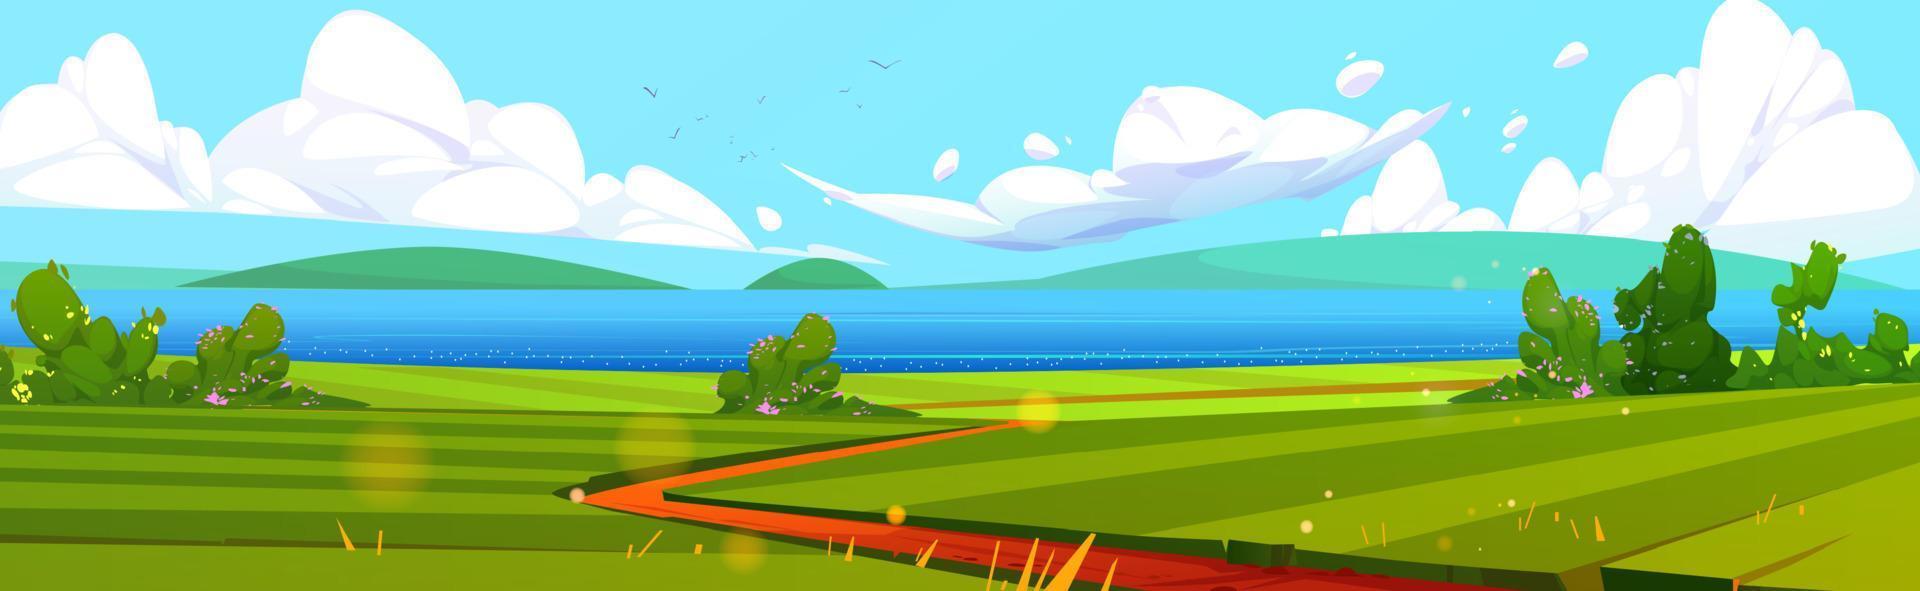 Summer seaside landscape cartoon illustration vector